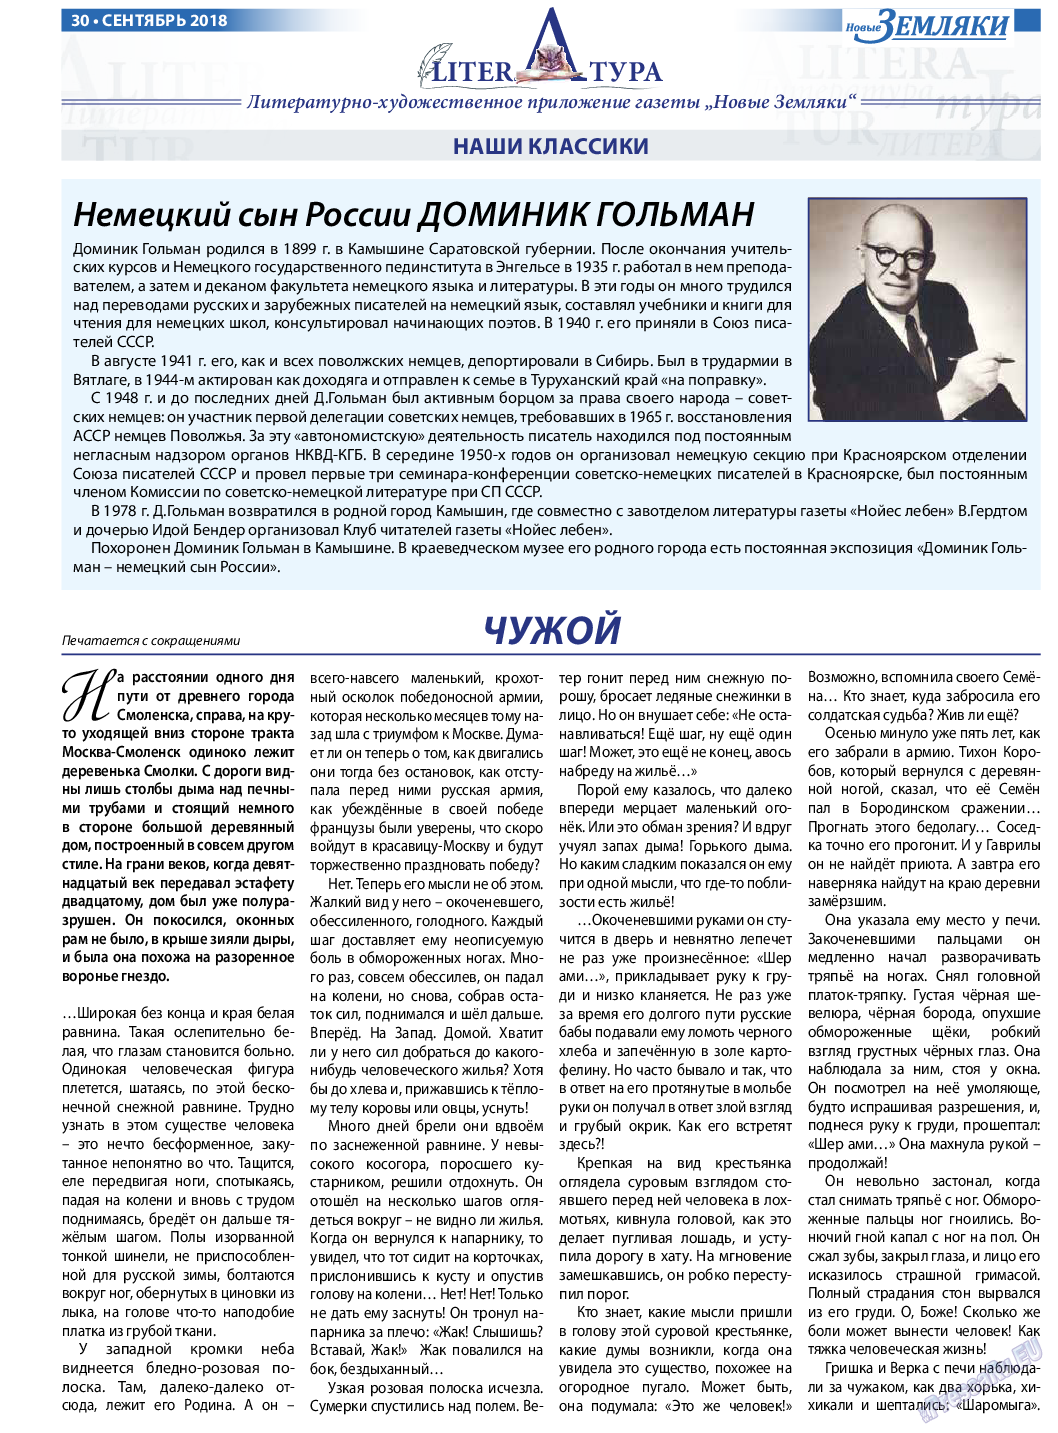 Новые Земляки, газета. 2018 №9 стр.30